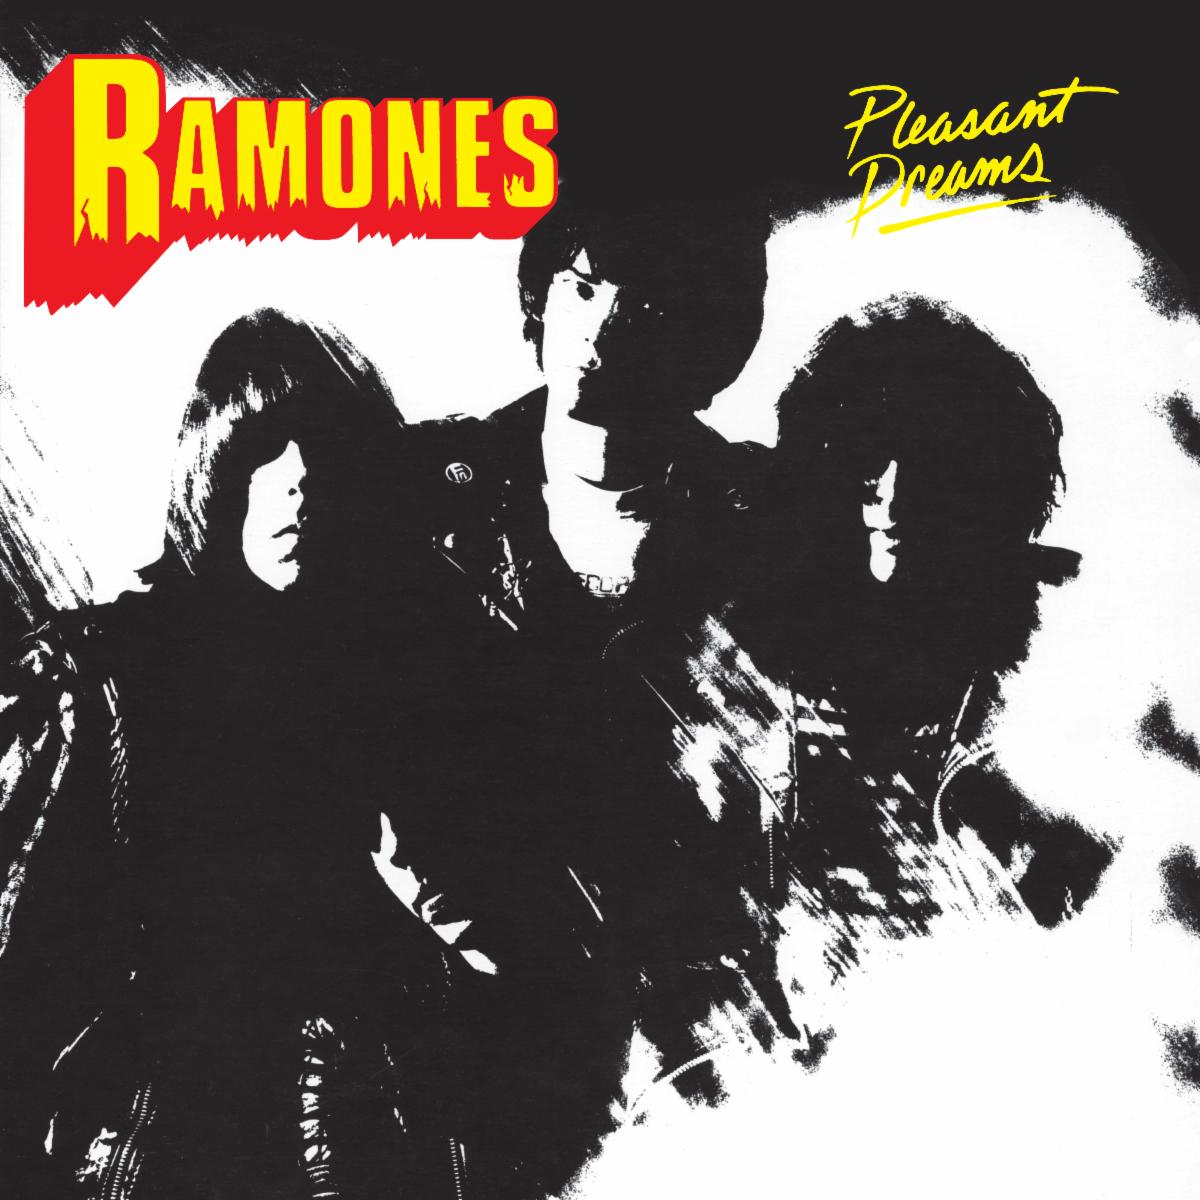 Ramones PleasantDreams Cover